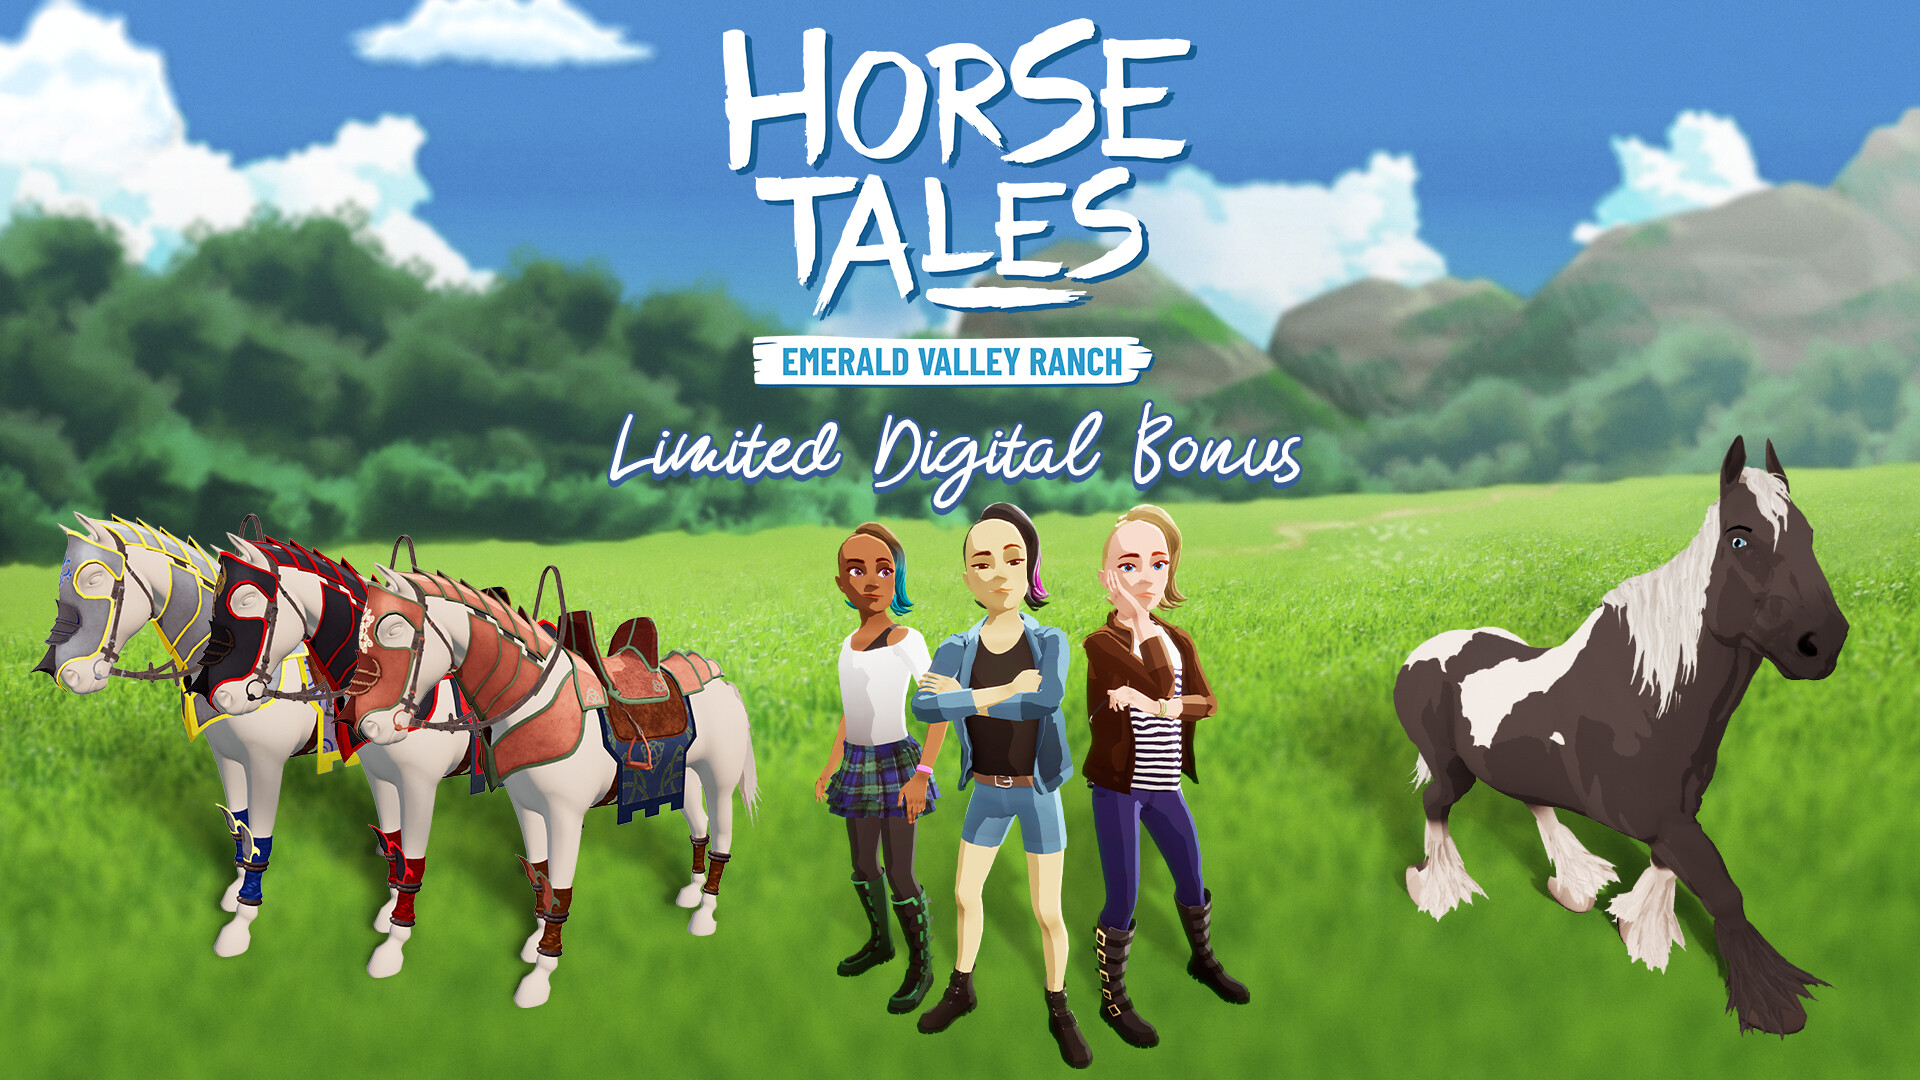 Horse Tales: Emerald Valley Ranch - Limited Digital Bonus DLC EU PS4 CD Key, 3.38 usd